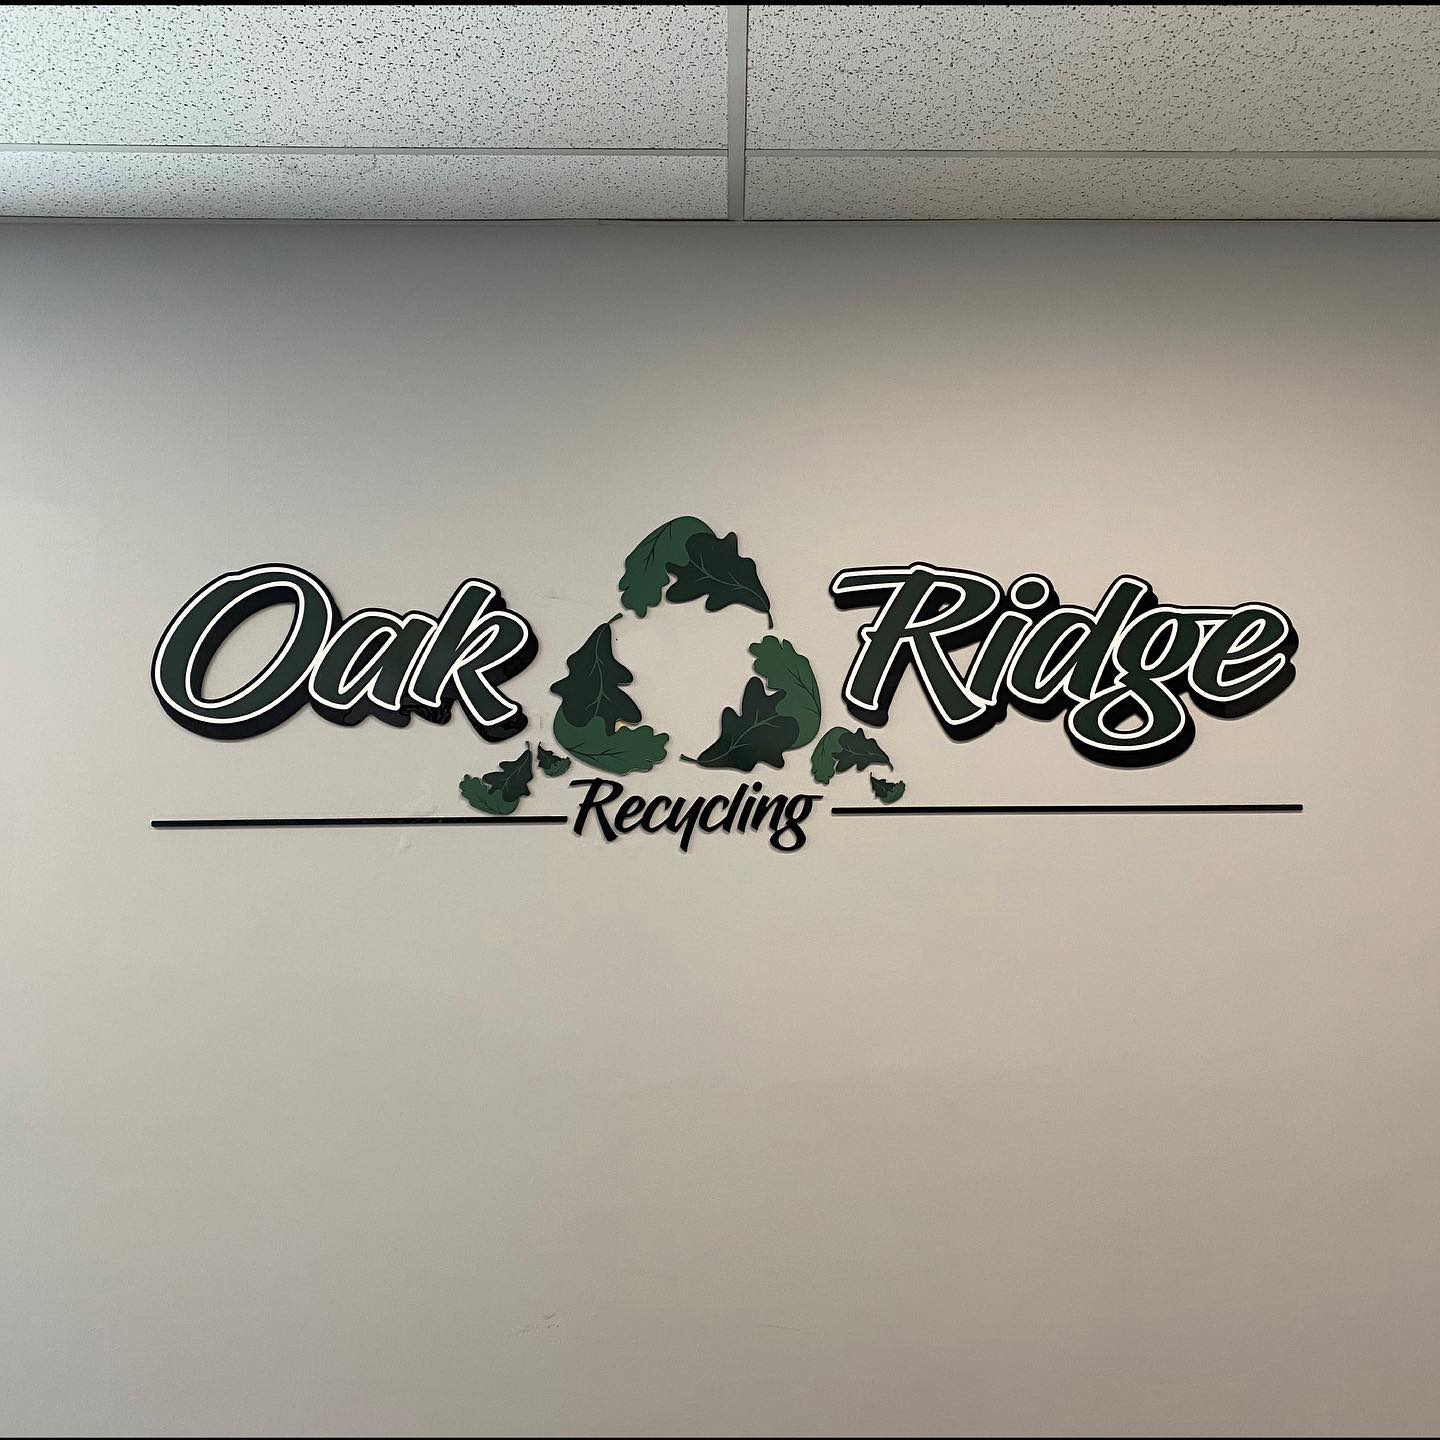 Oak Ridge Waste & Recycling 3